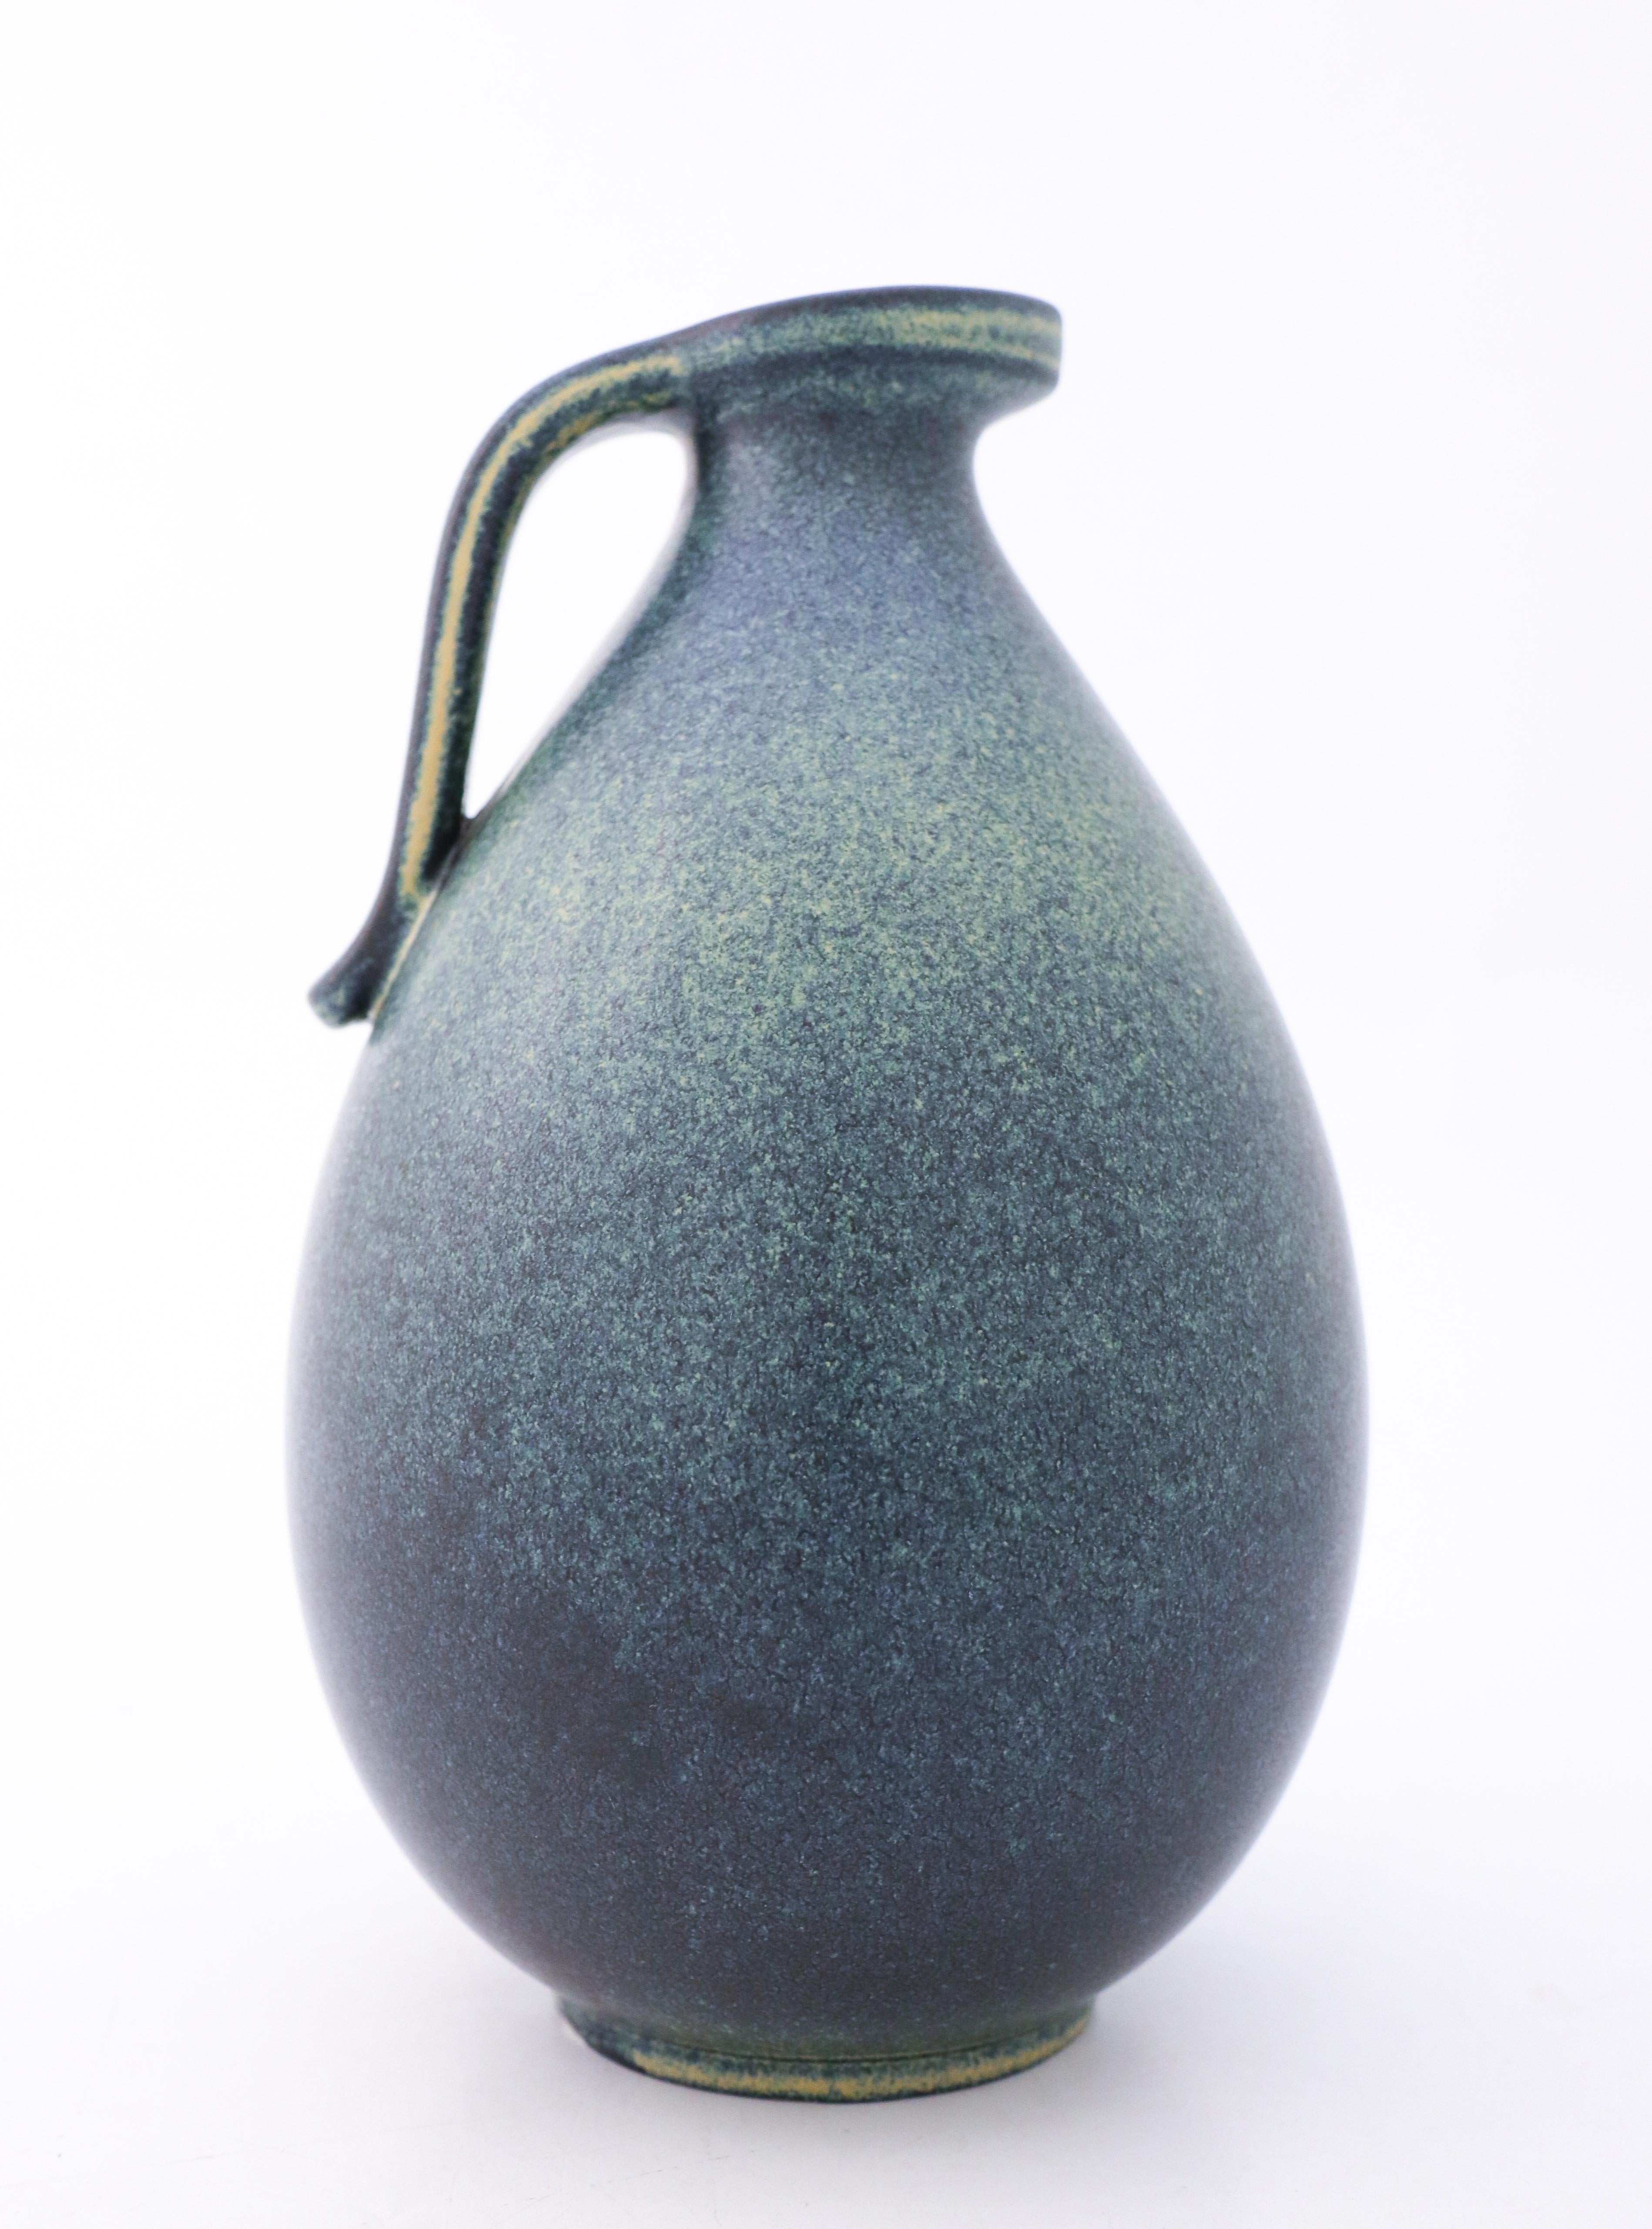 Eine blaue Vase mit schöner Glasur, entworfen von Gunnar Nylund in Rörstrand, 24,5 cm (9.8) hoch. Es ist in ausgezeichnetem Zustand, abgesehen von einigen kleinen Flecken in der Glasur, und als 1. Qualität gekennzeichnet. 

Gunnar Nylund wurde 1904